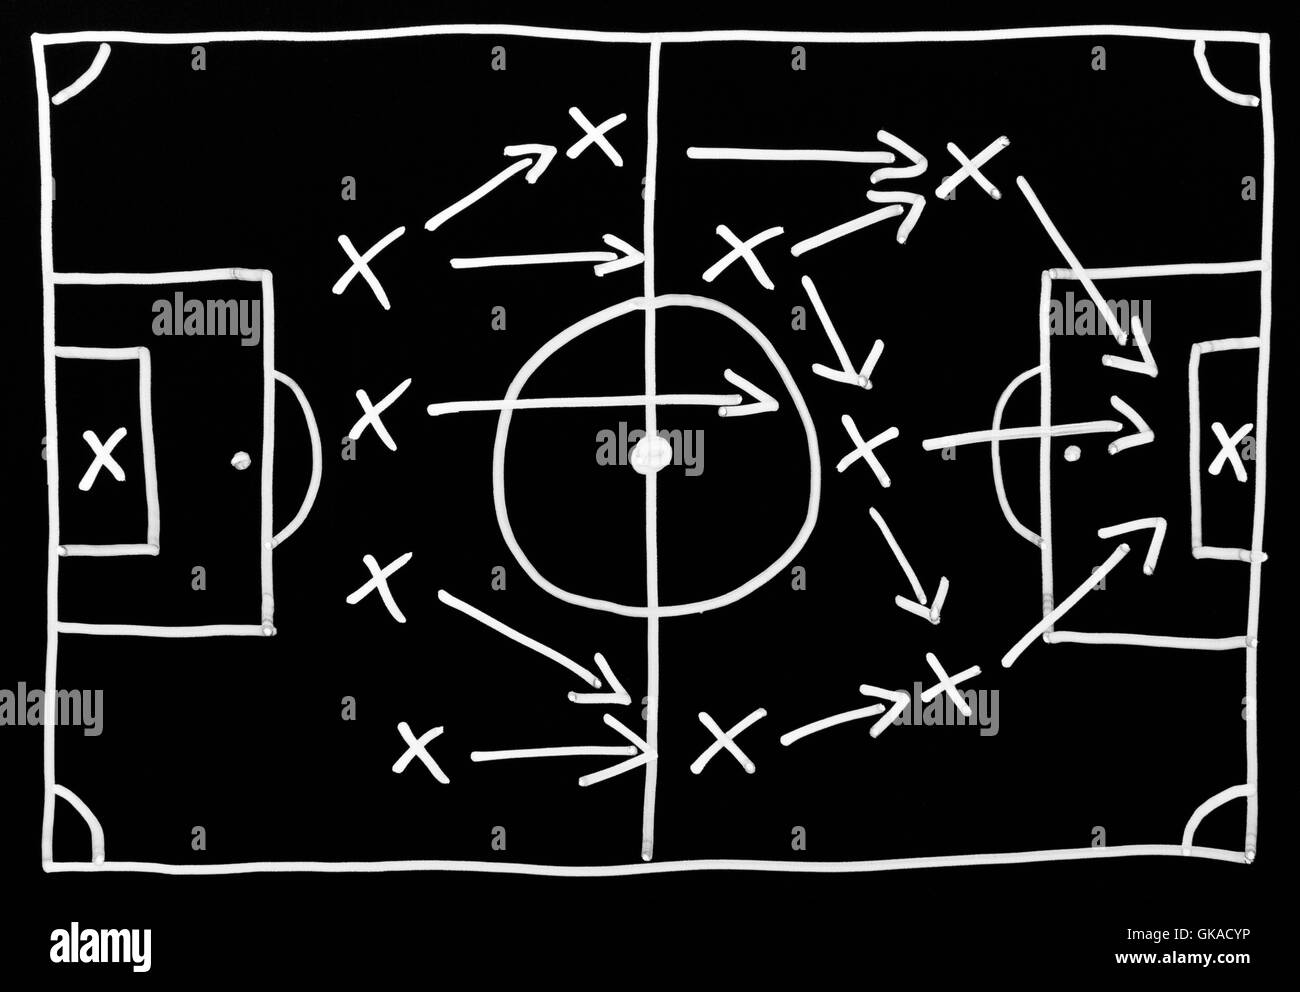 Tácticas de fútbol - Tácticas de fútbol Fotografía de stock - Alamy